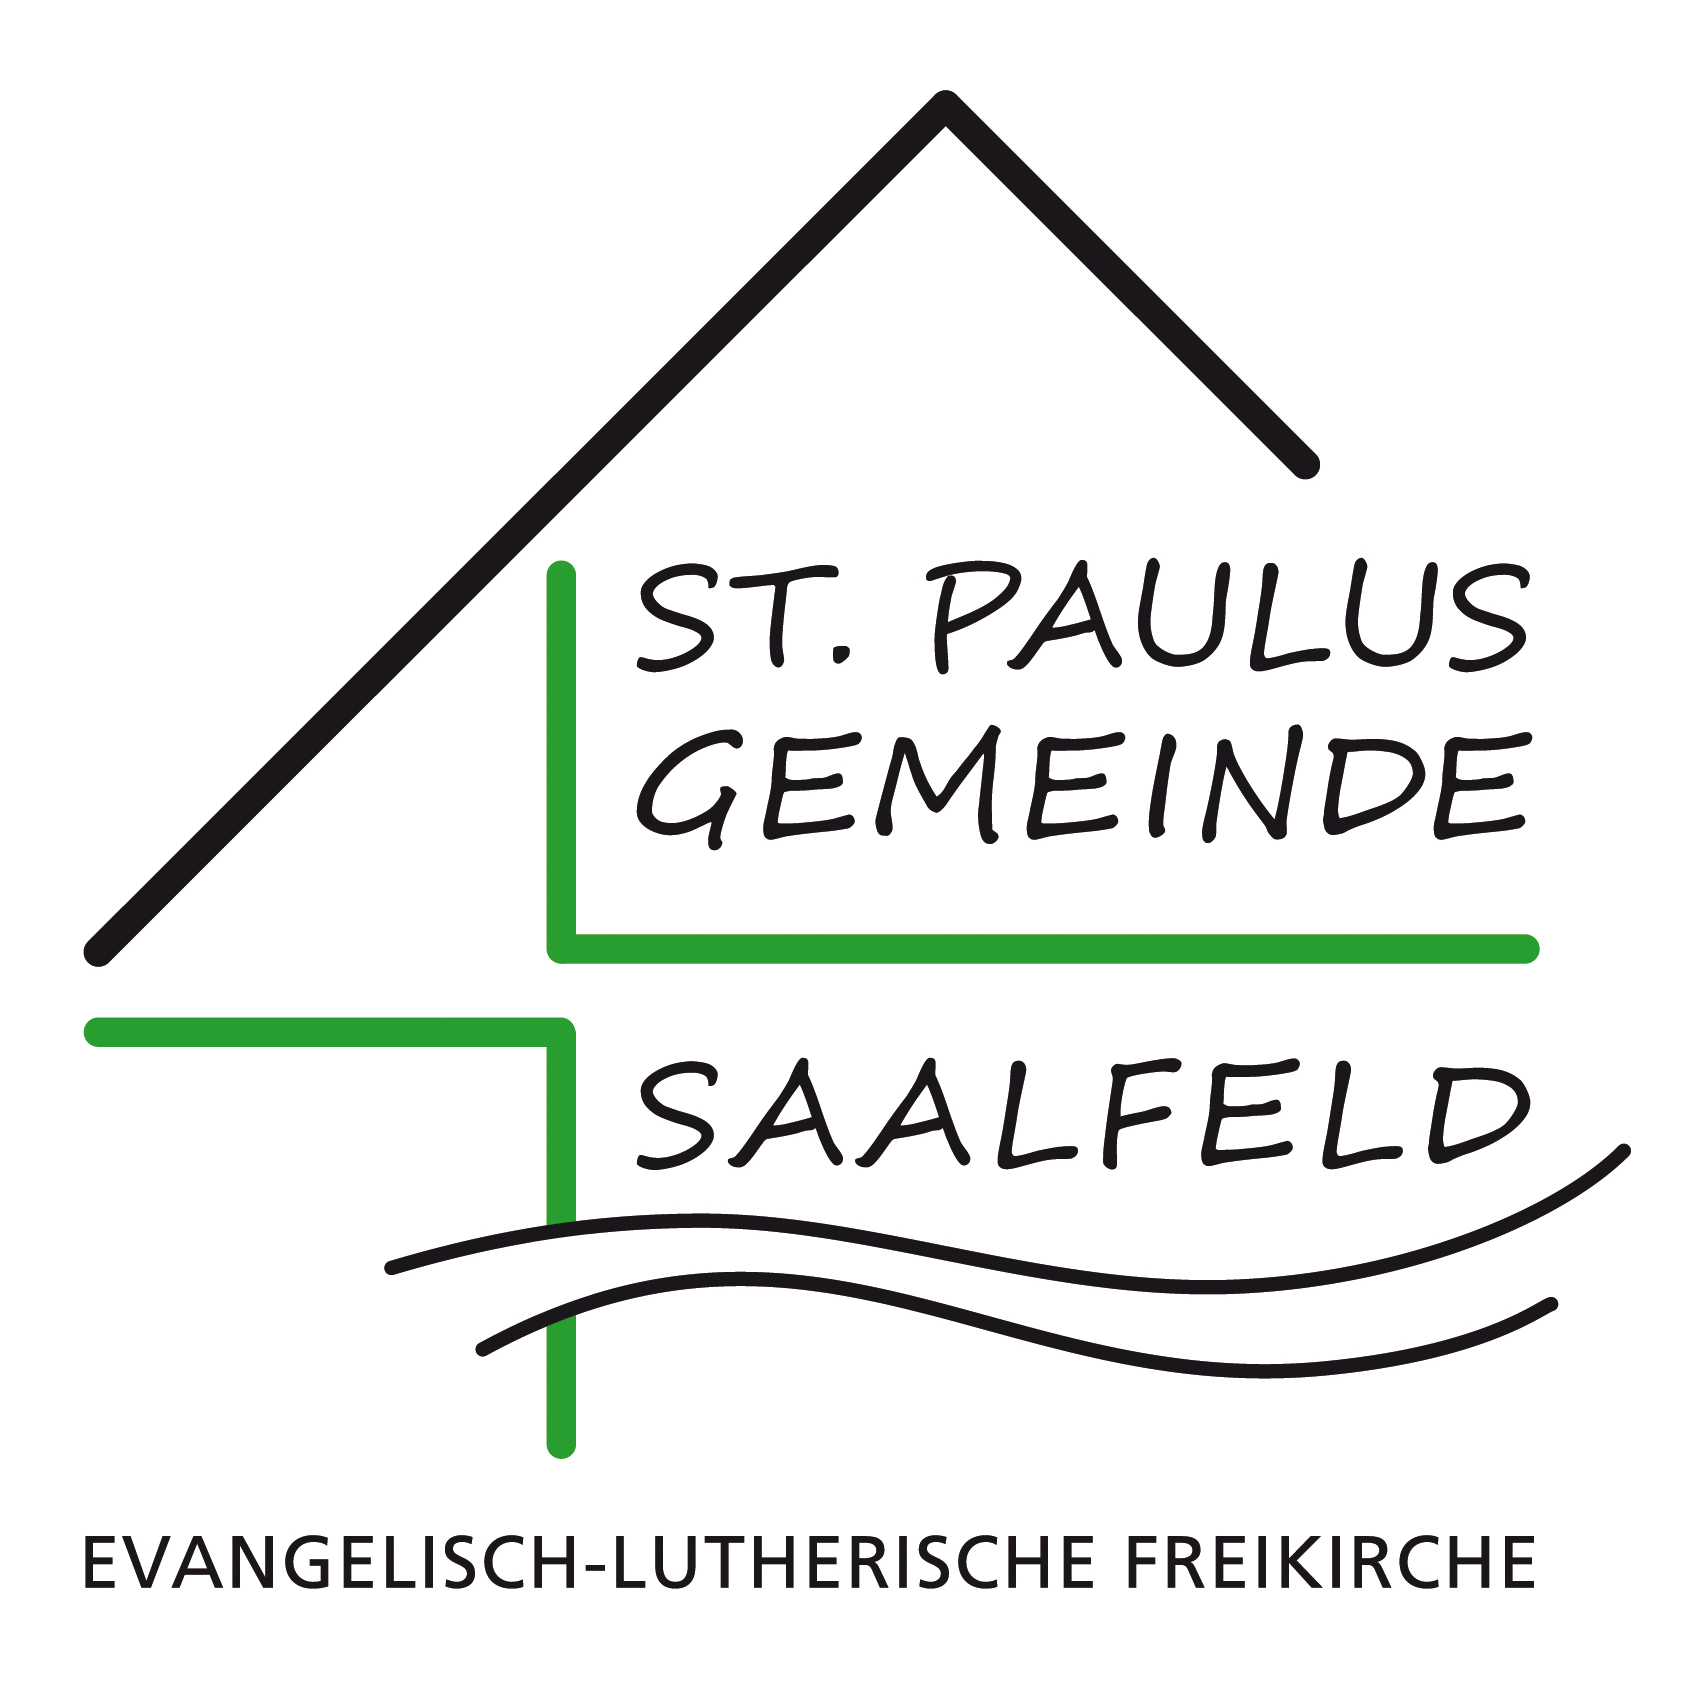 St. Paulusgemeinde Saalfeld